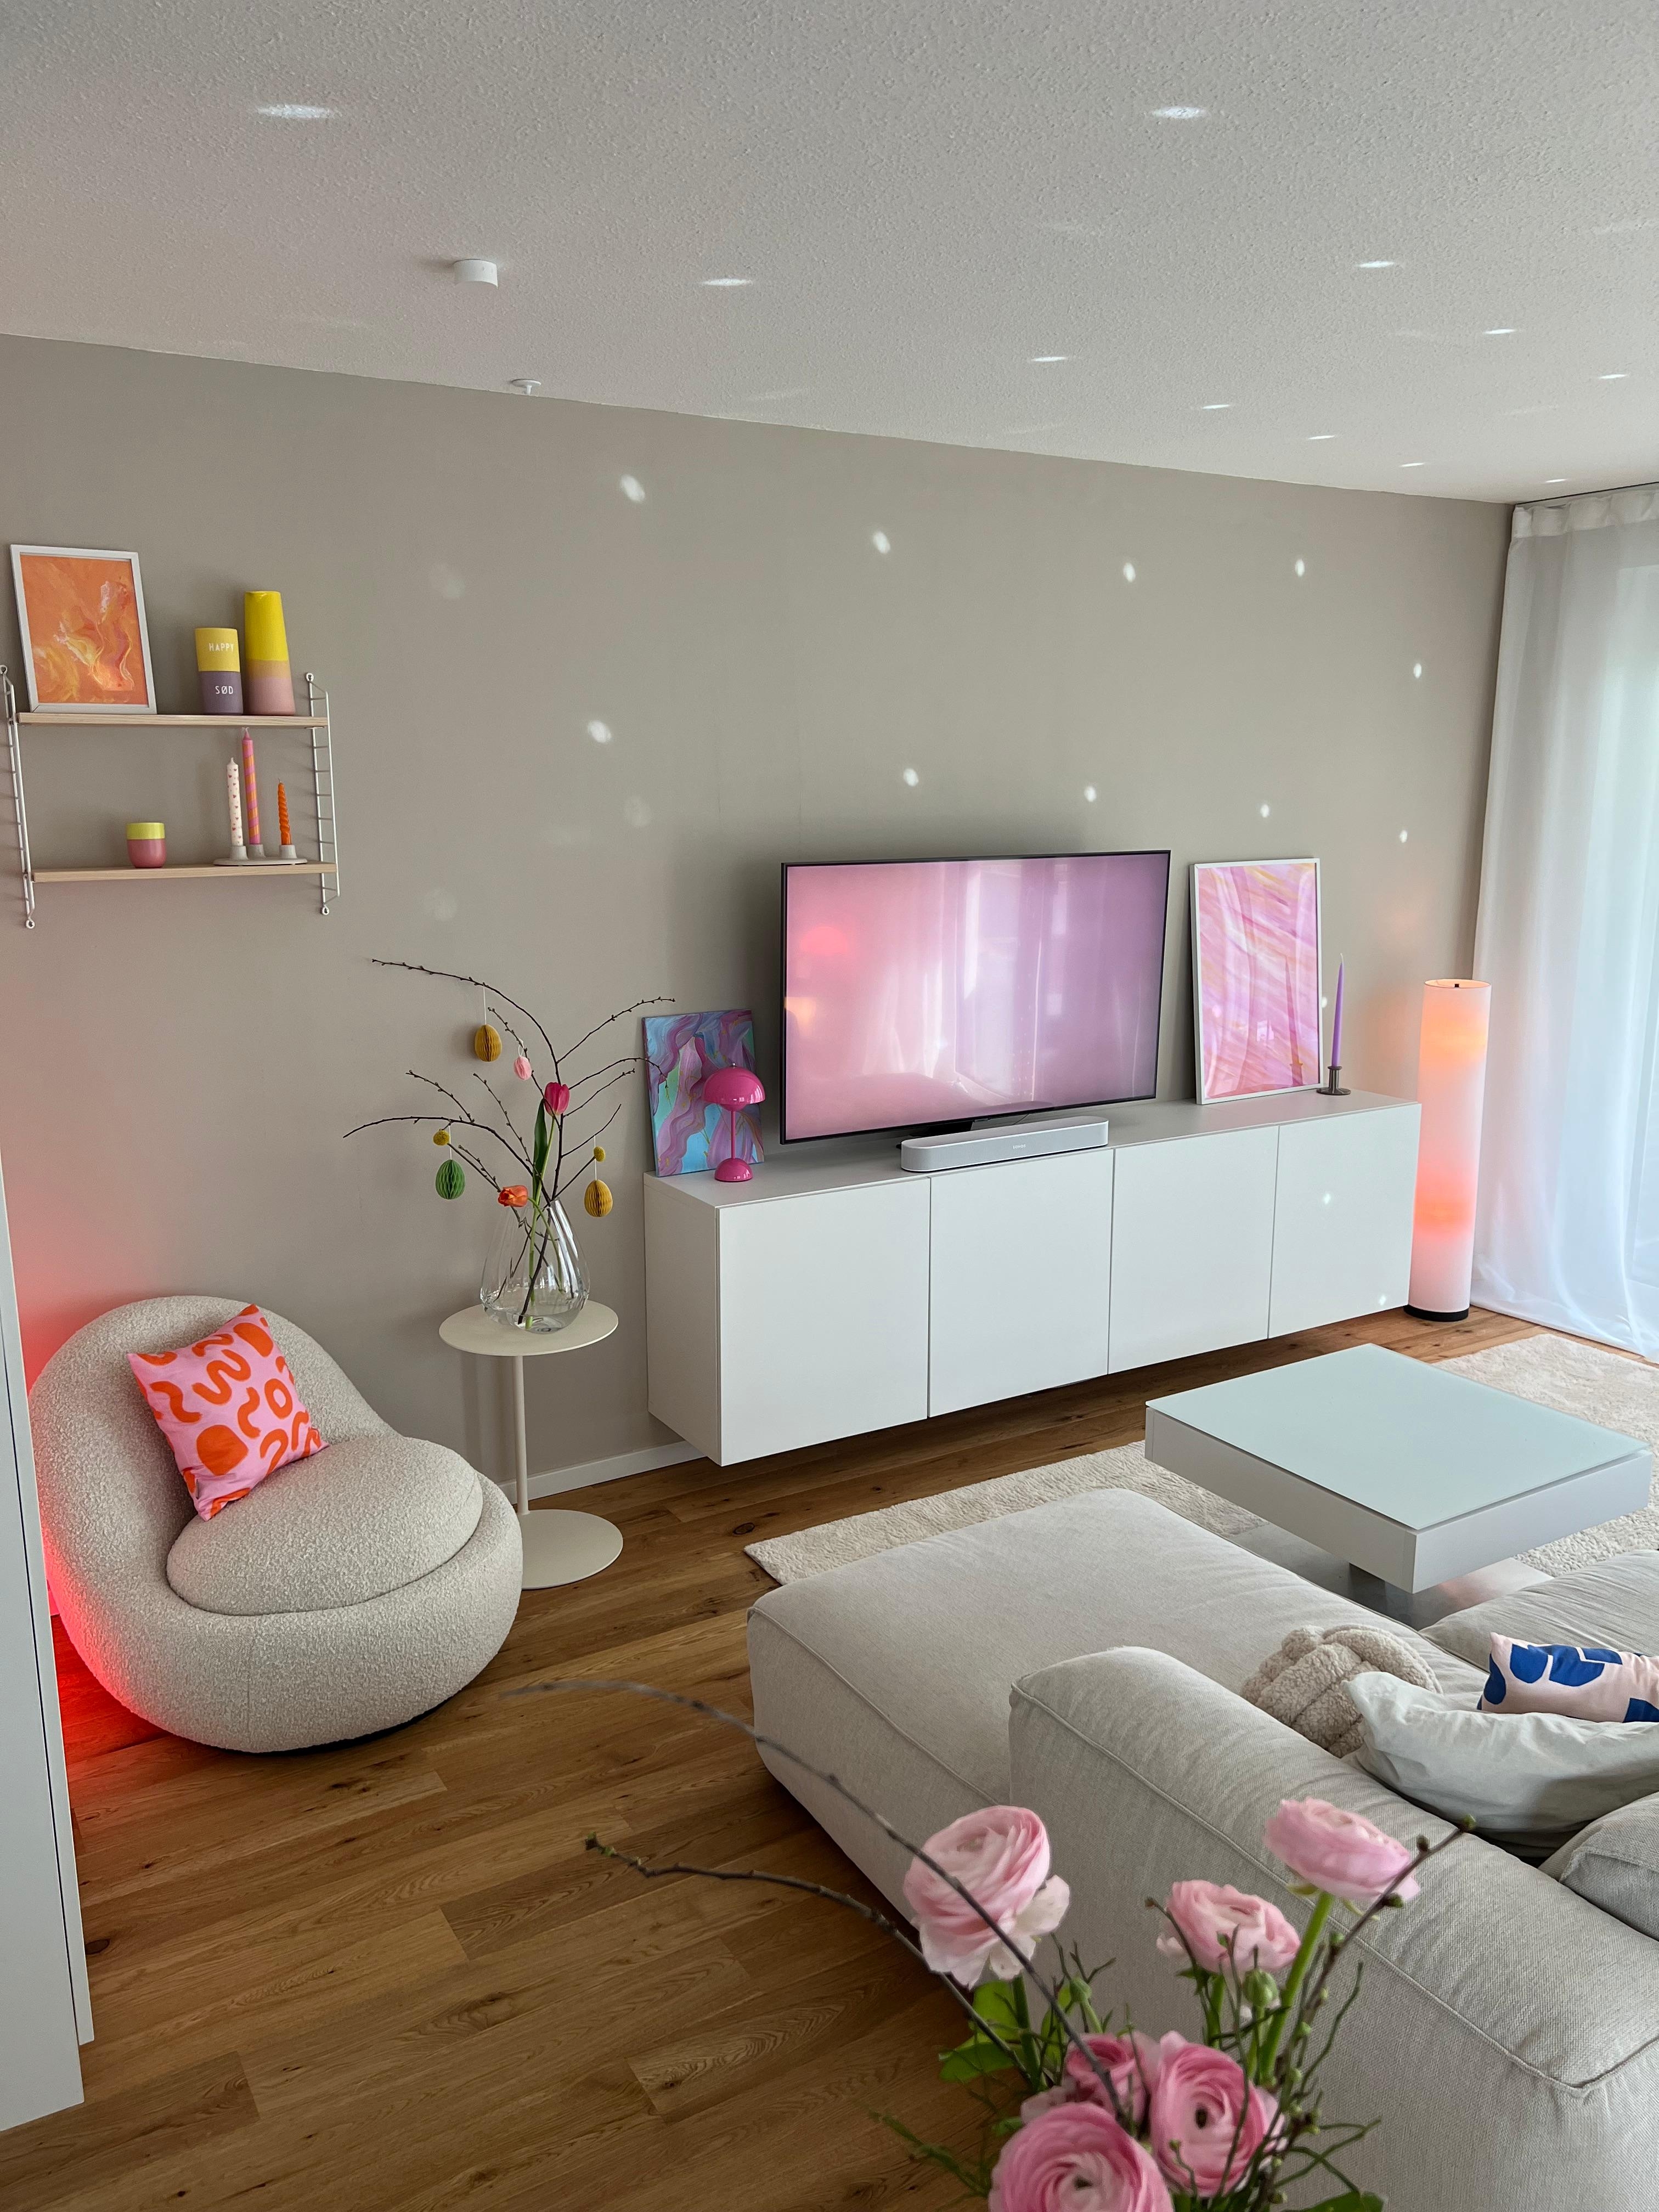 Mein Wohnzimmer ist bereit für Ostermontag! Seid ihr es auch? 🌞🐣🌼🩵🦋 #nordicliving #easterweekend #interiordesign 